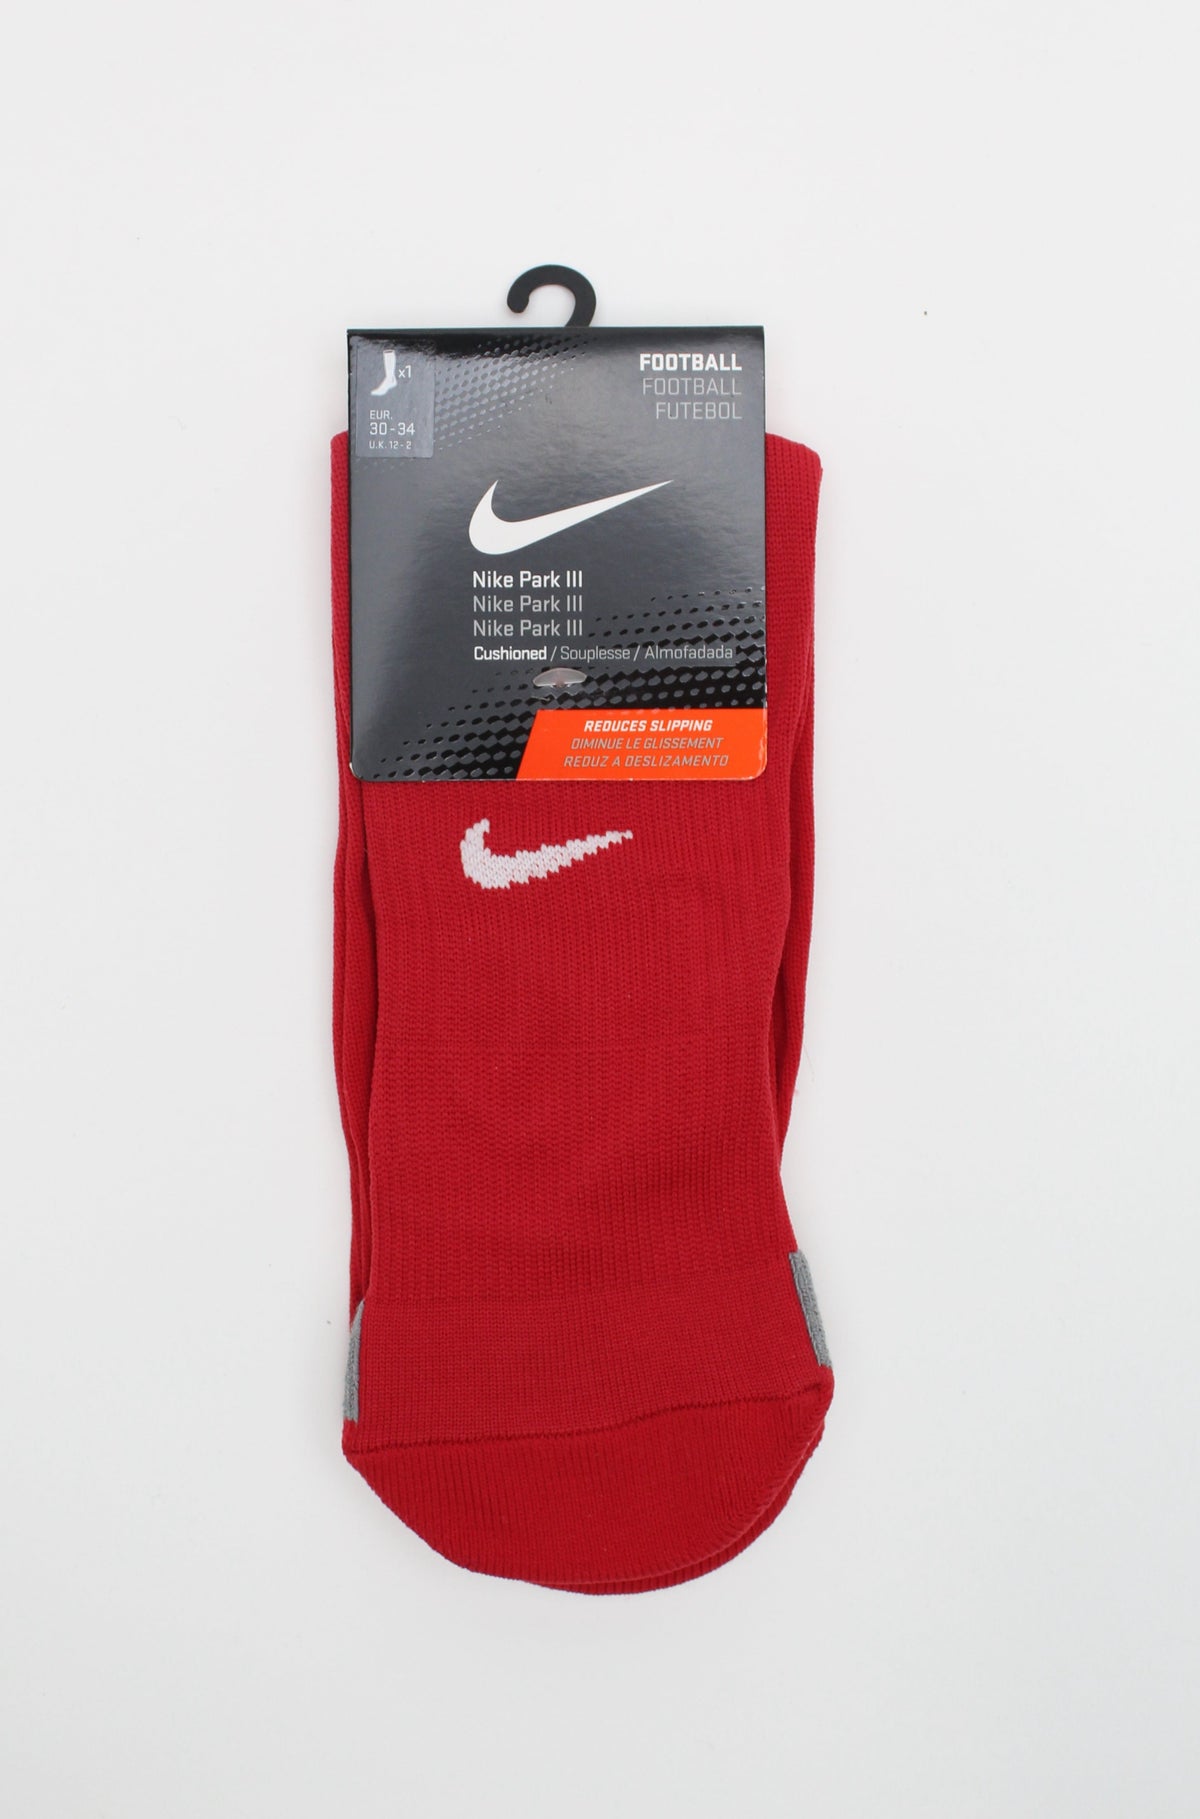 Nike Football Socks